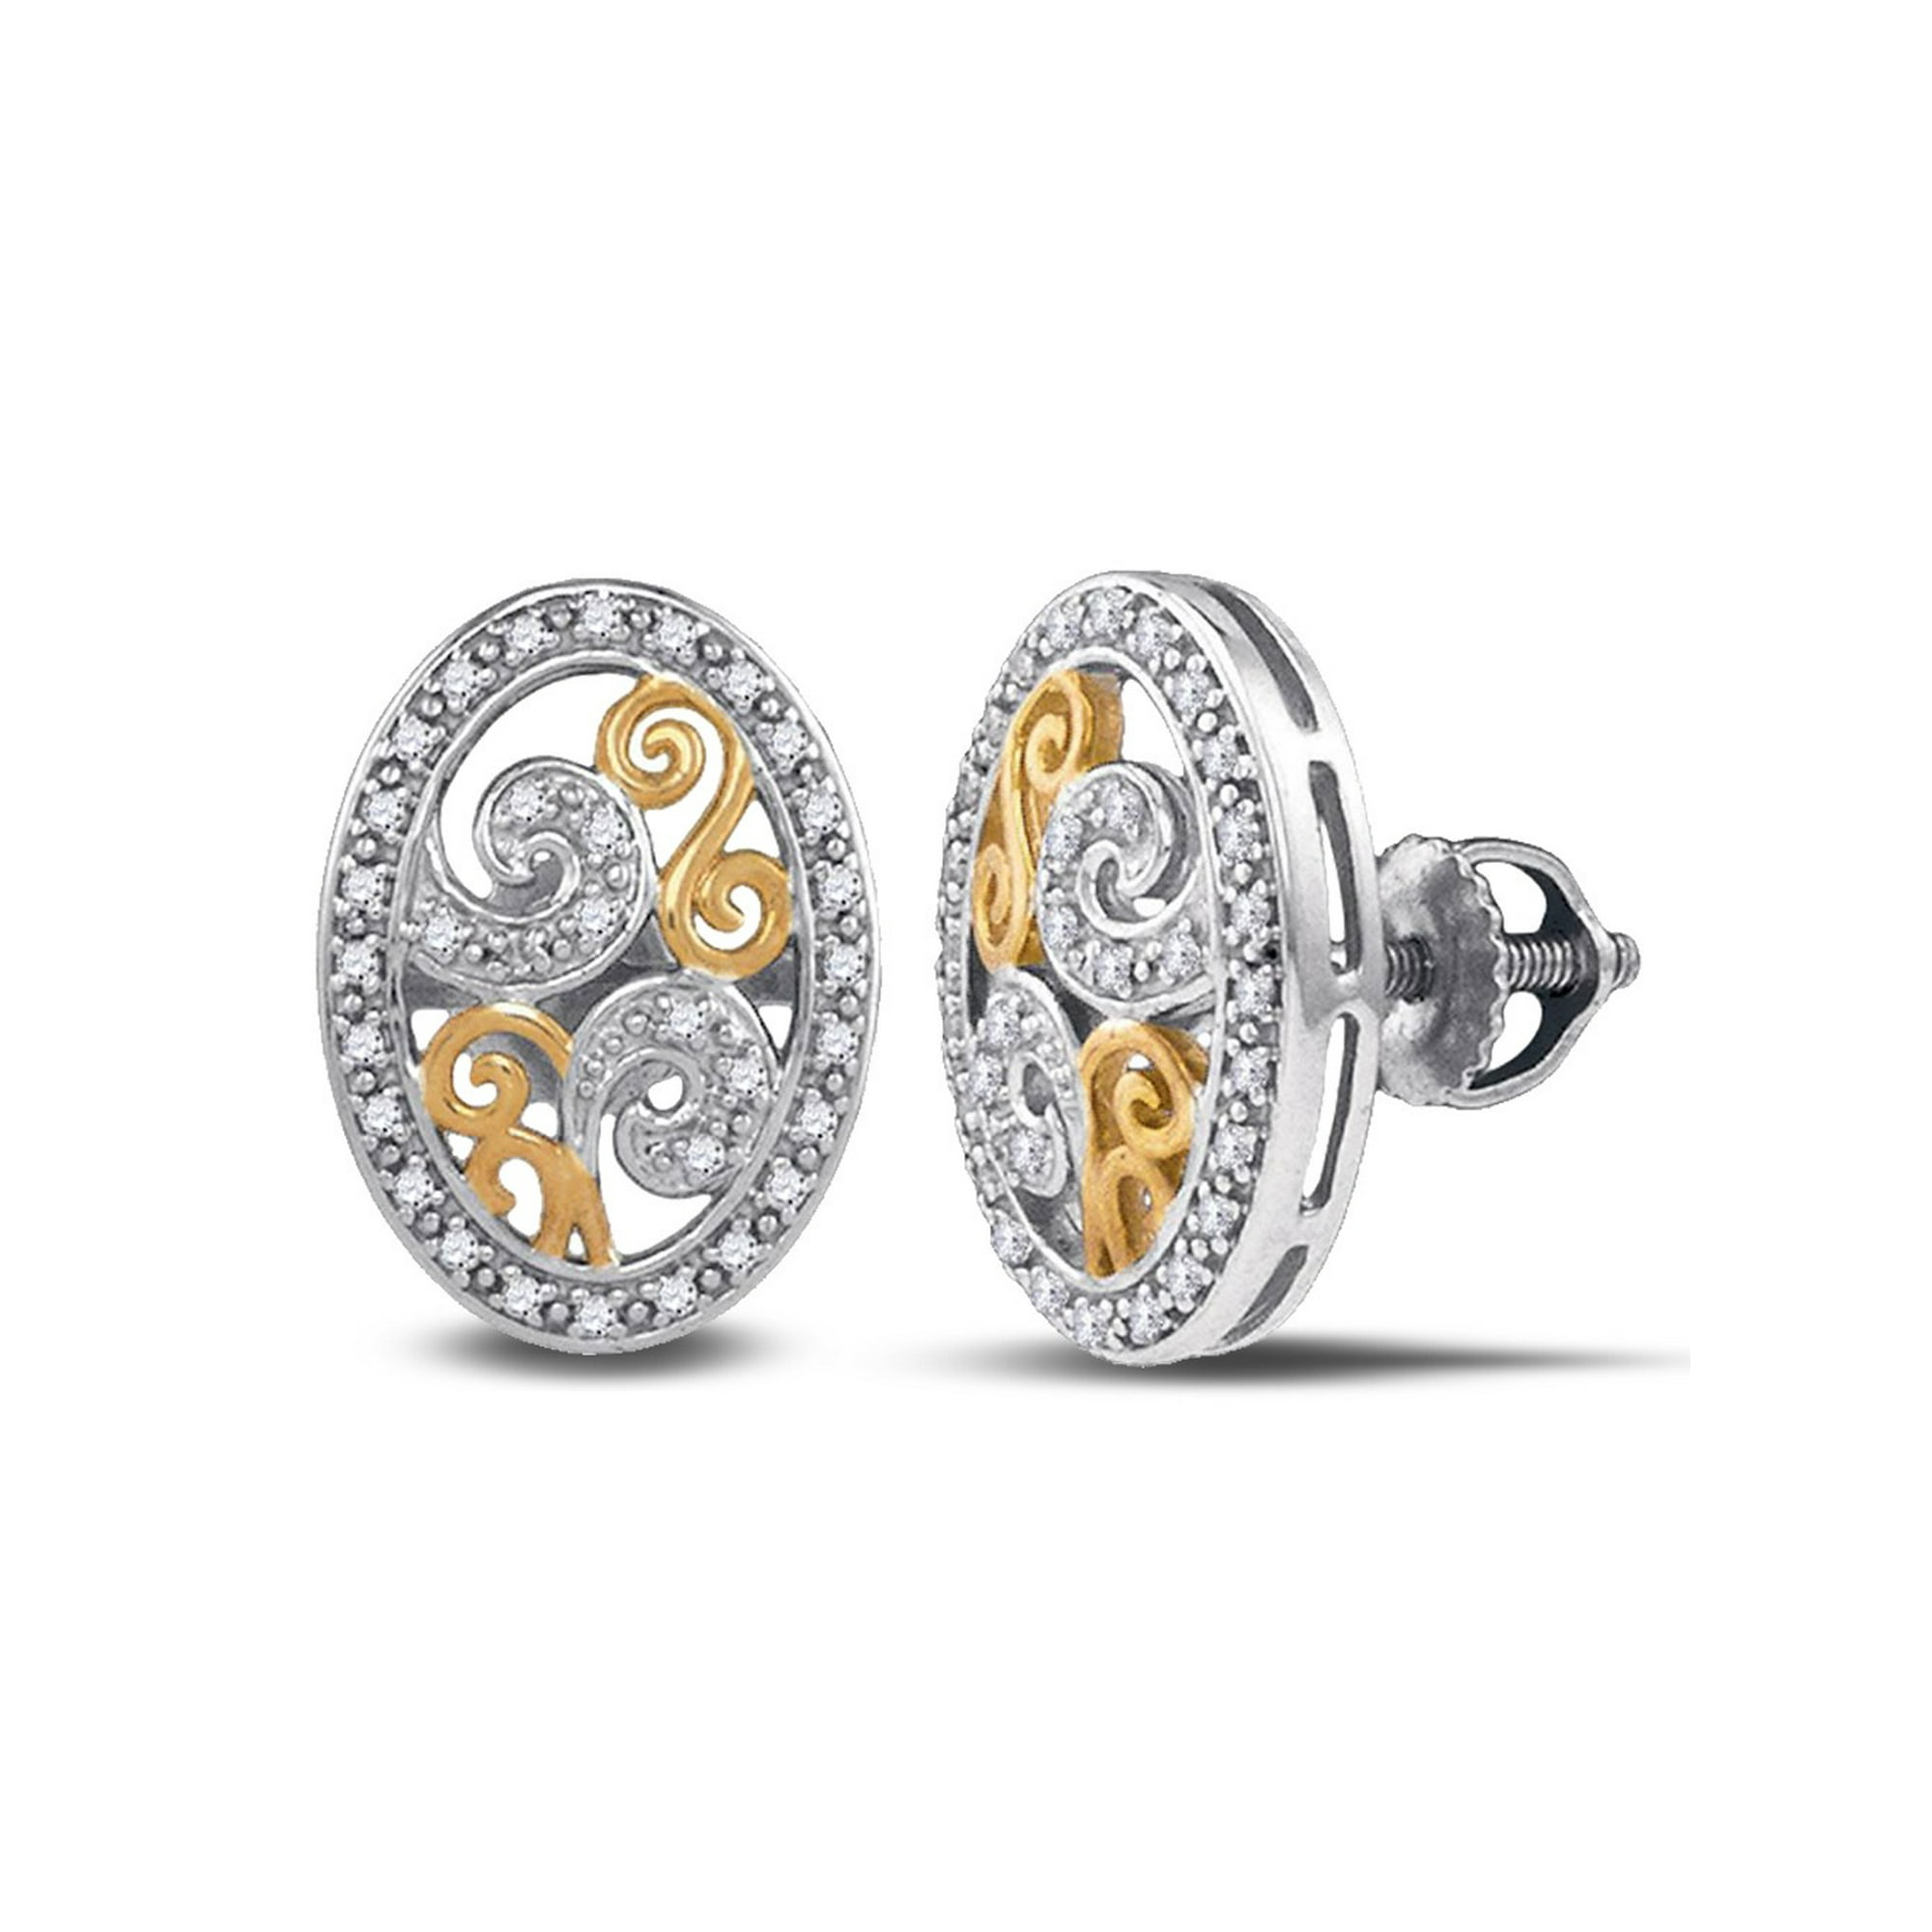 1 6 Carat Ctw I2 I3 Diamond Oval Earrings In Sterling Silver